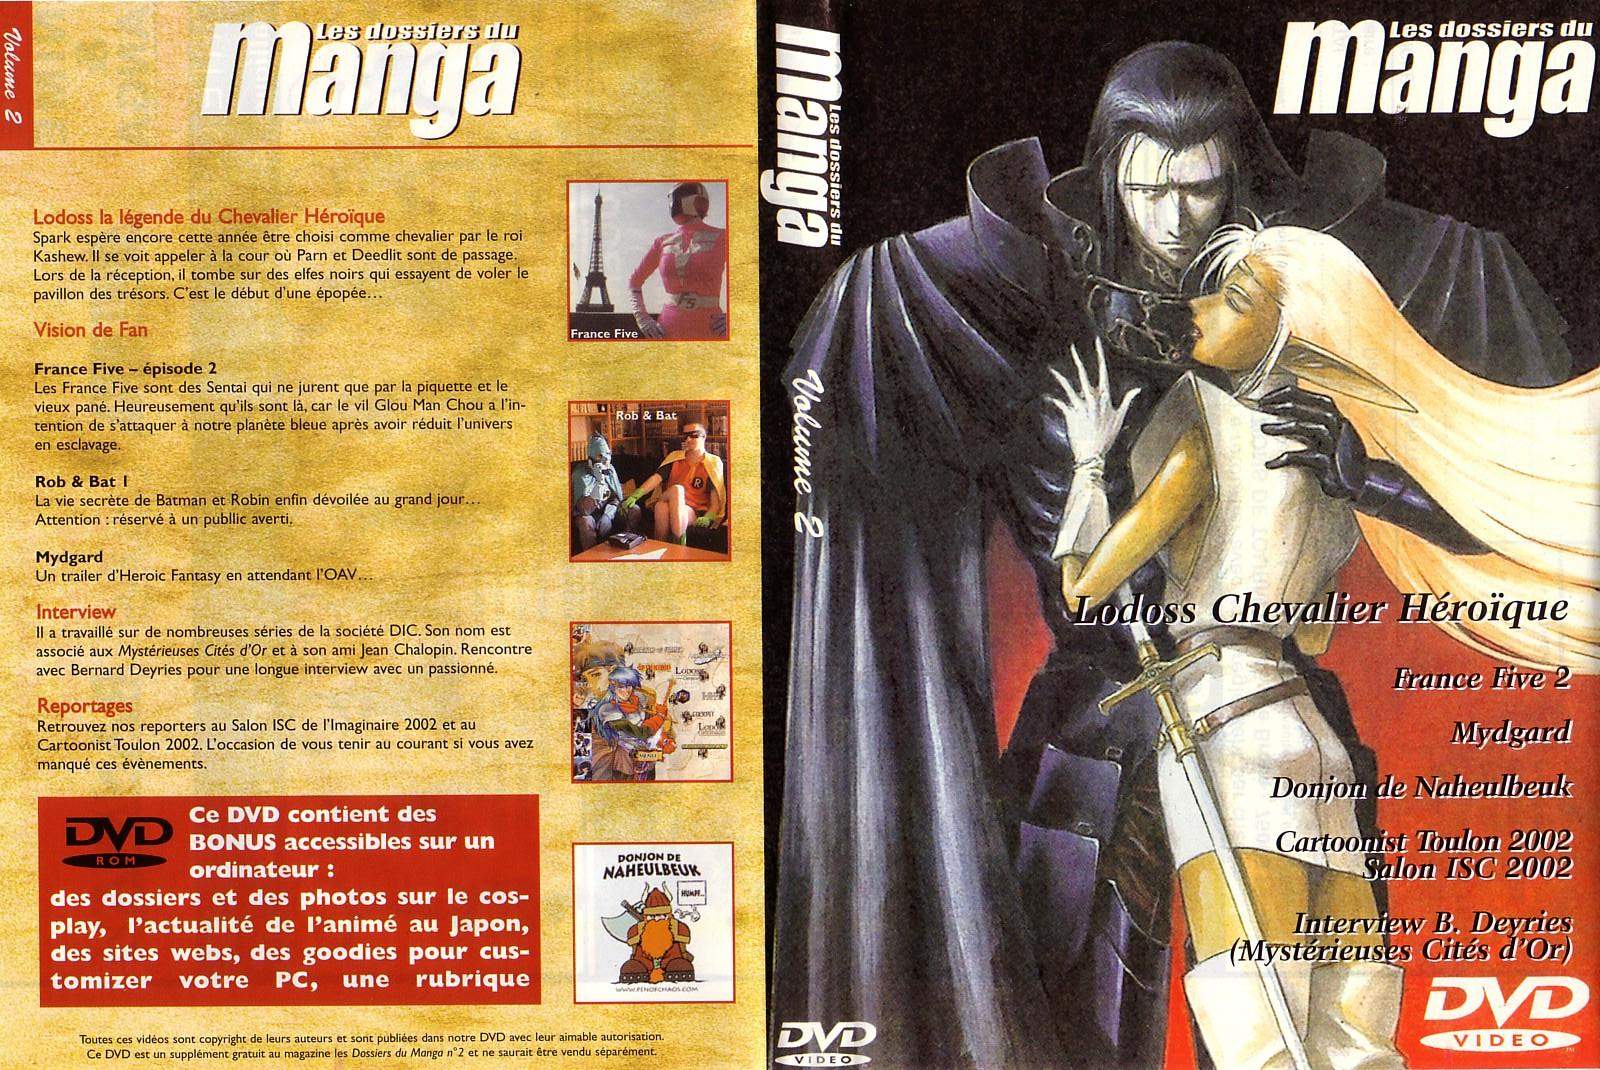 Jaquette DVD Les dossiers du manga vol 02